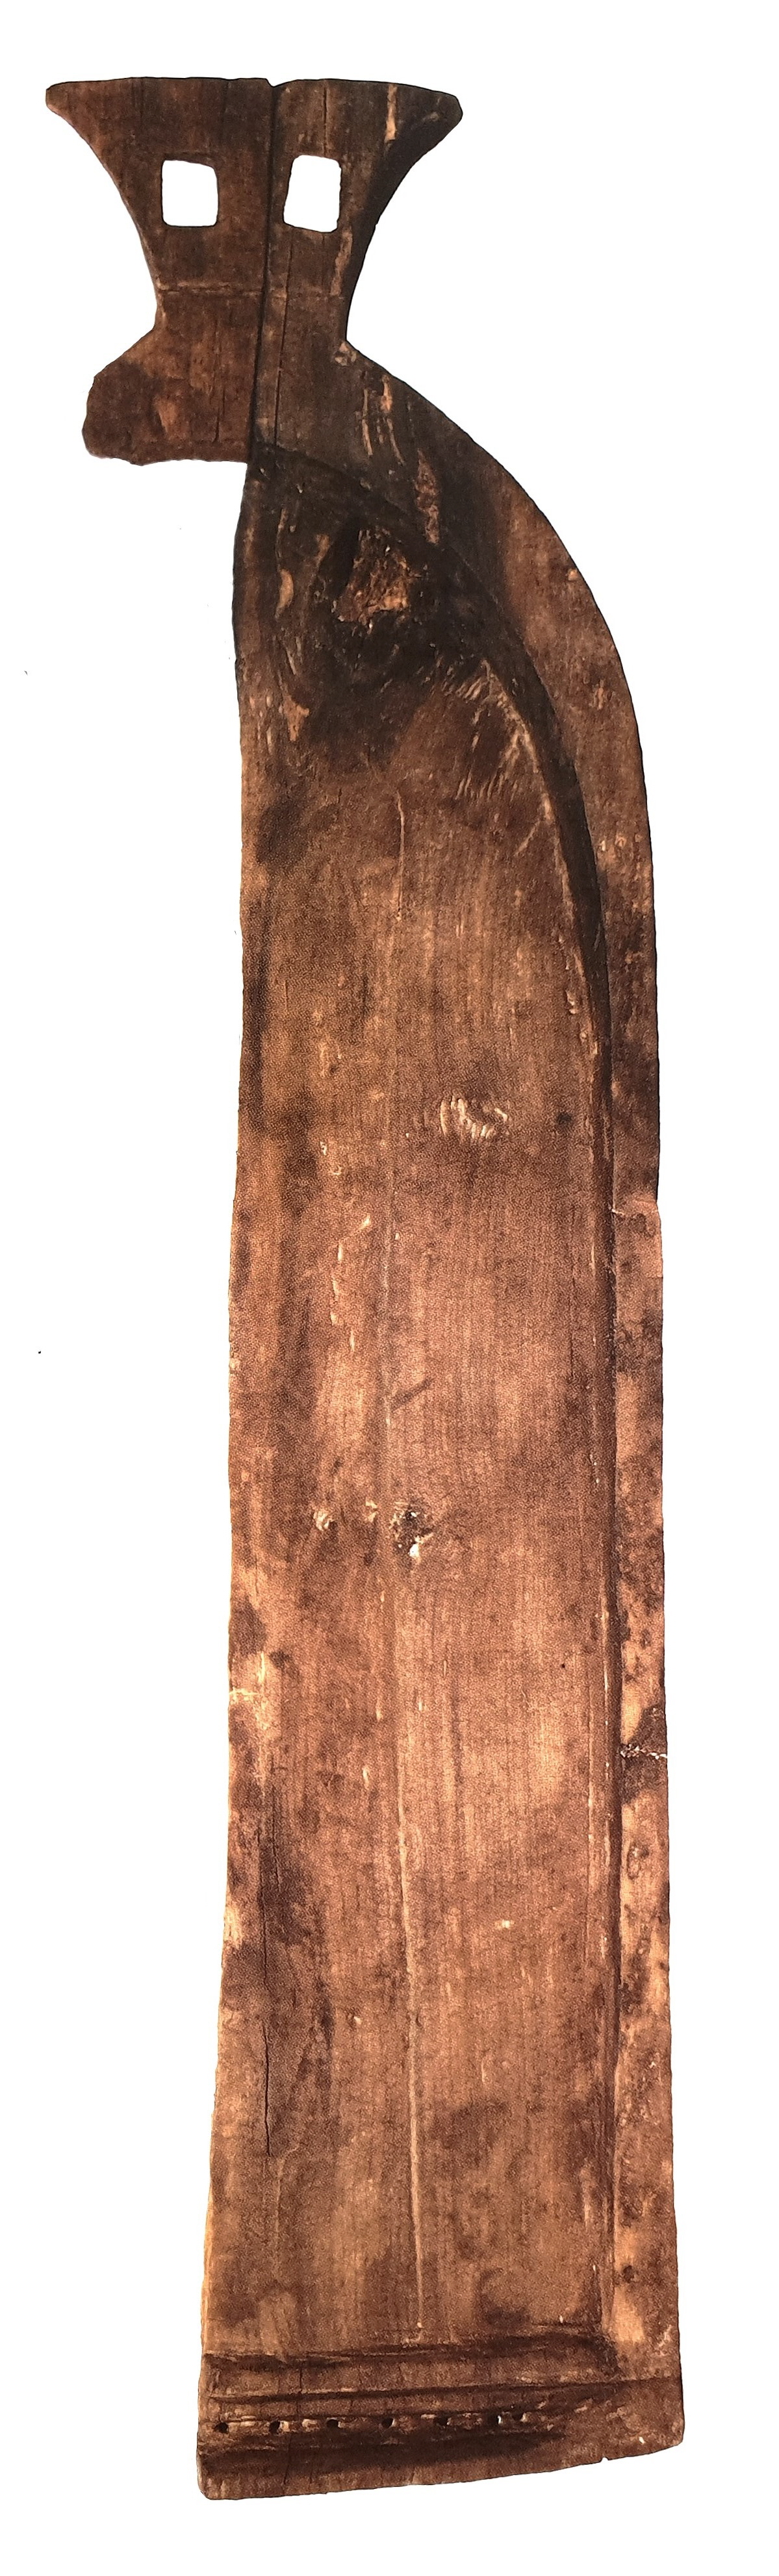 1992년 광주 광산구 신창동에서 출토된 초기 철기시대 현악기(길이 77.2cm). 연못 속 촉촉한 펄에 밀봉된 덕분에 보존 
상태가 완벽하다. 국립광주박물관 제공